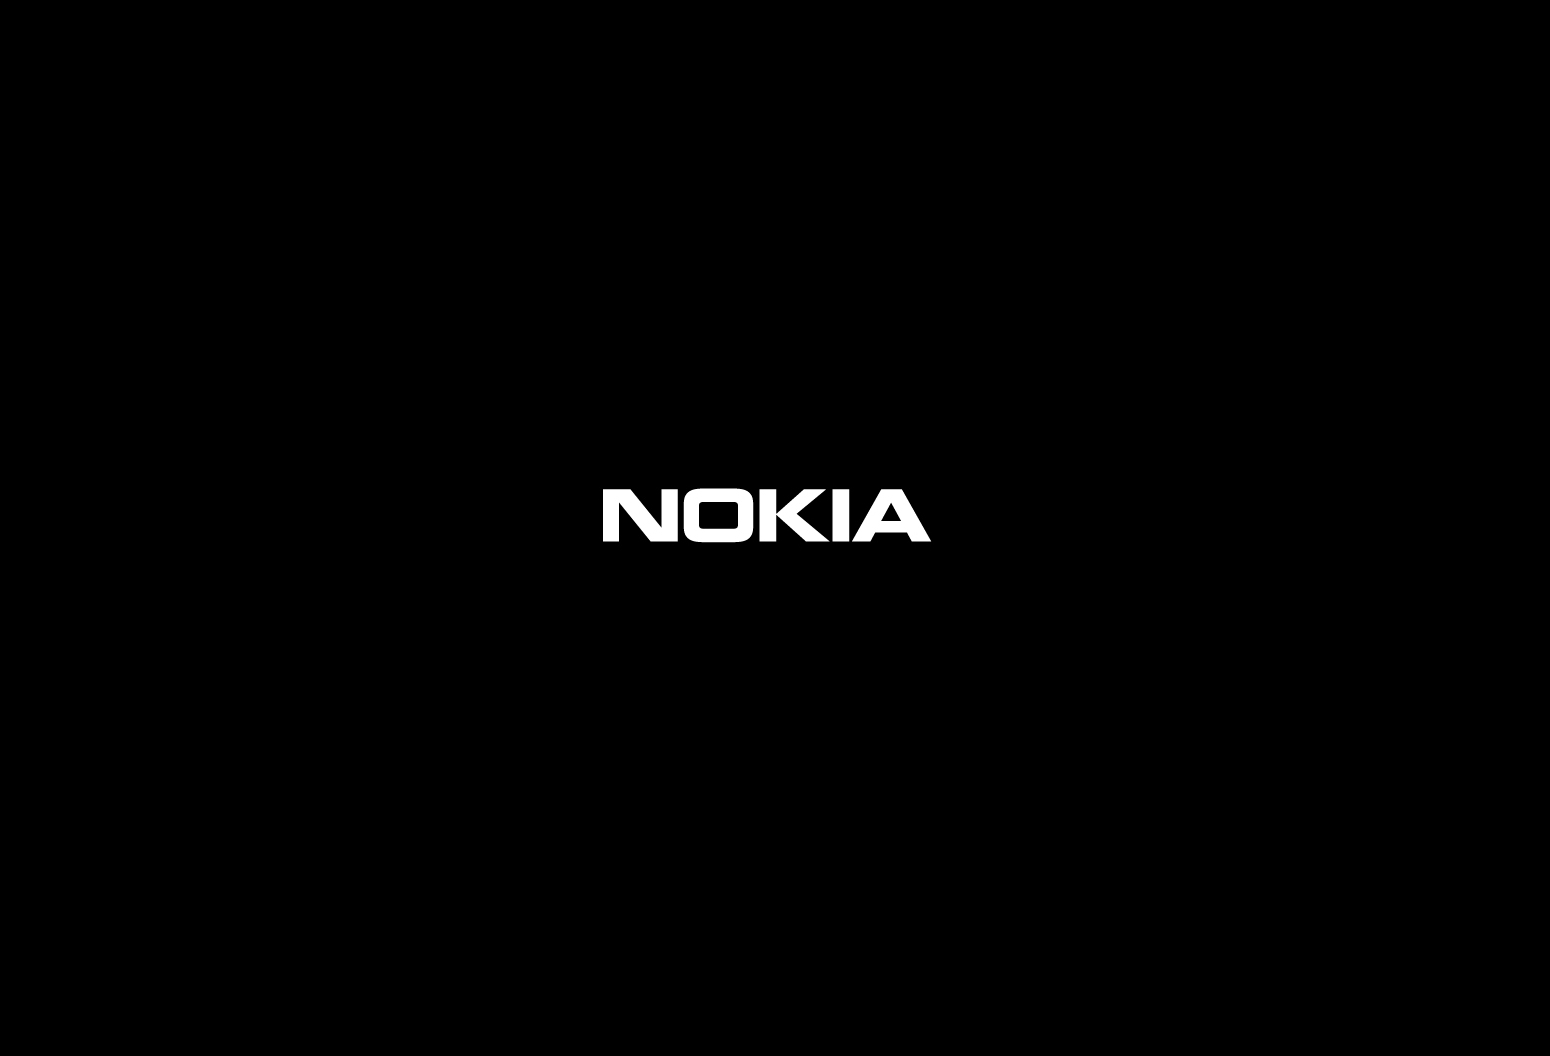 Wallpaper Nokia Salve A Imagem E Coloque No Seu Desktop Ou Notebook